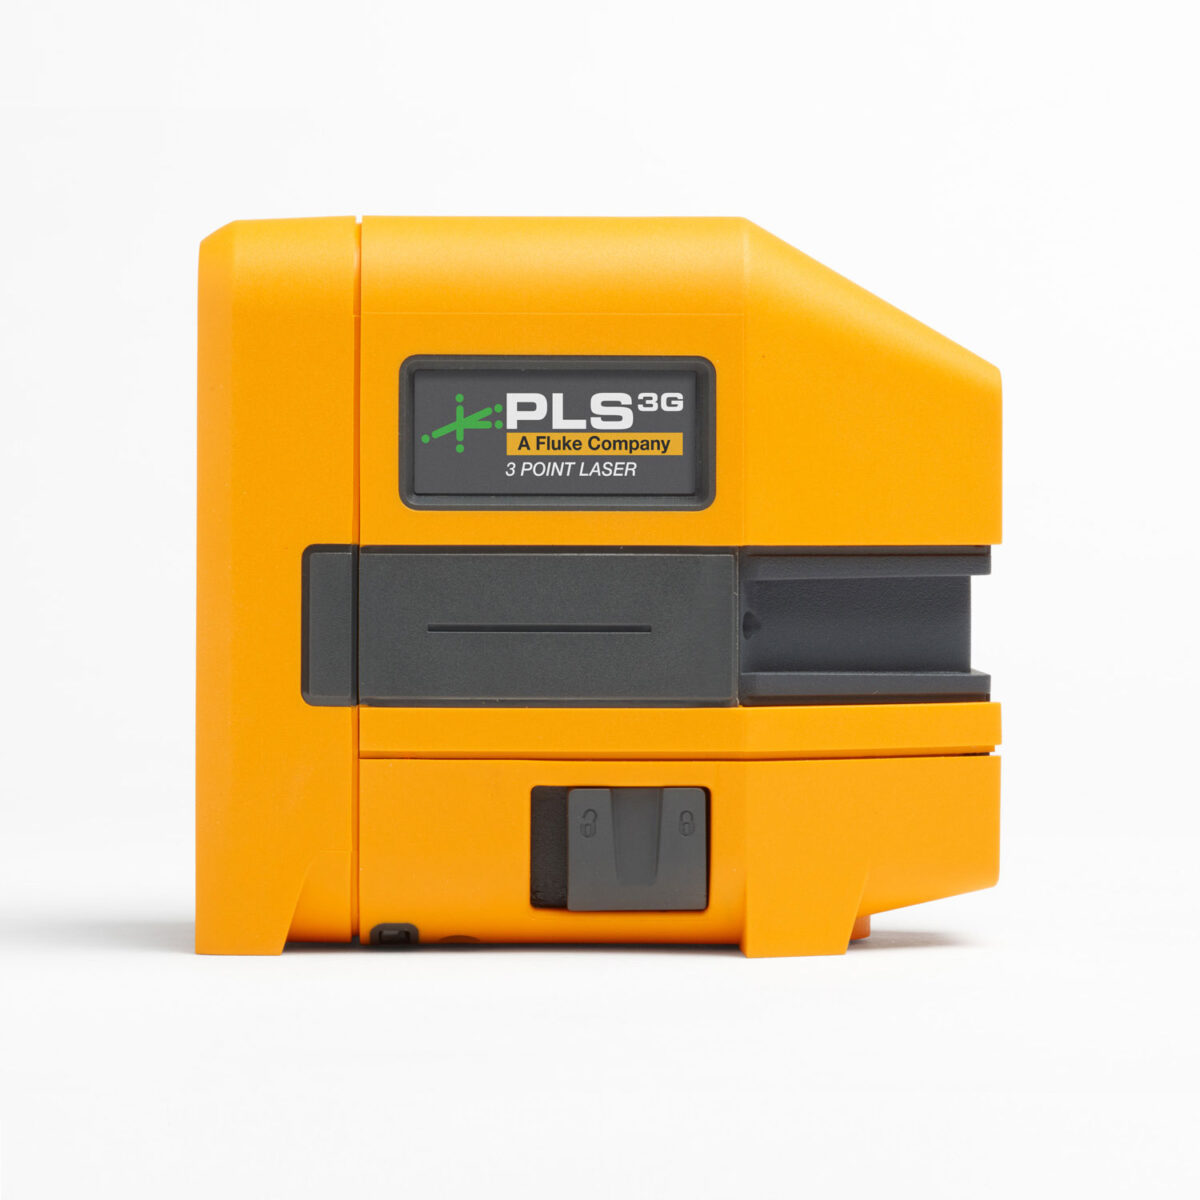 PLS 3G - 3 Point Laser